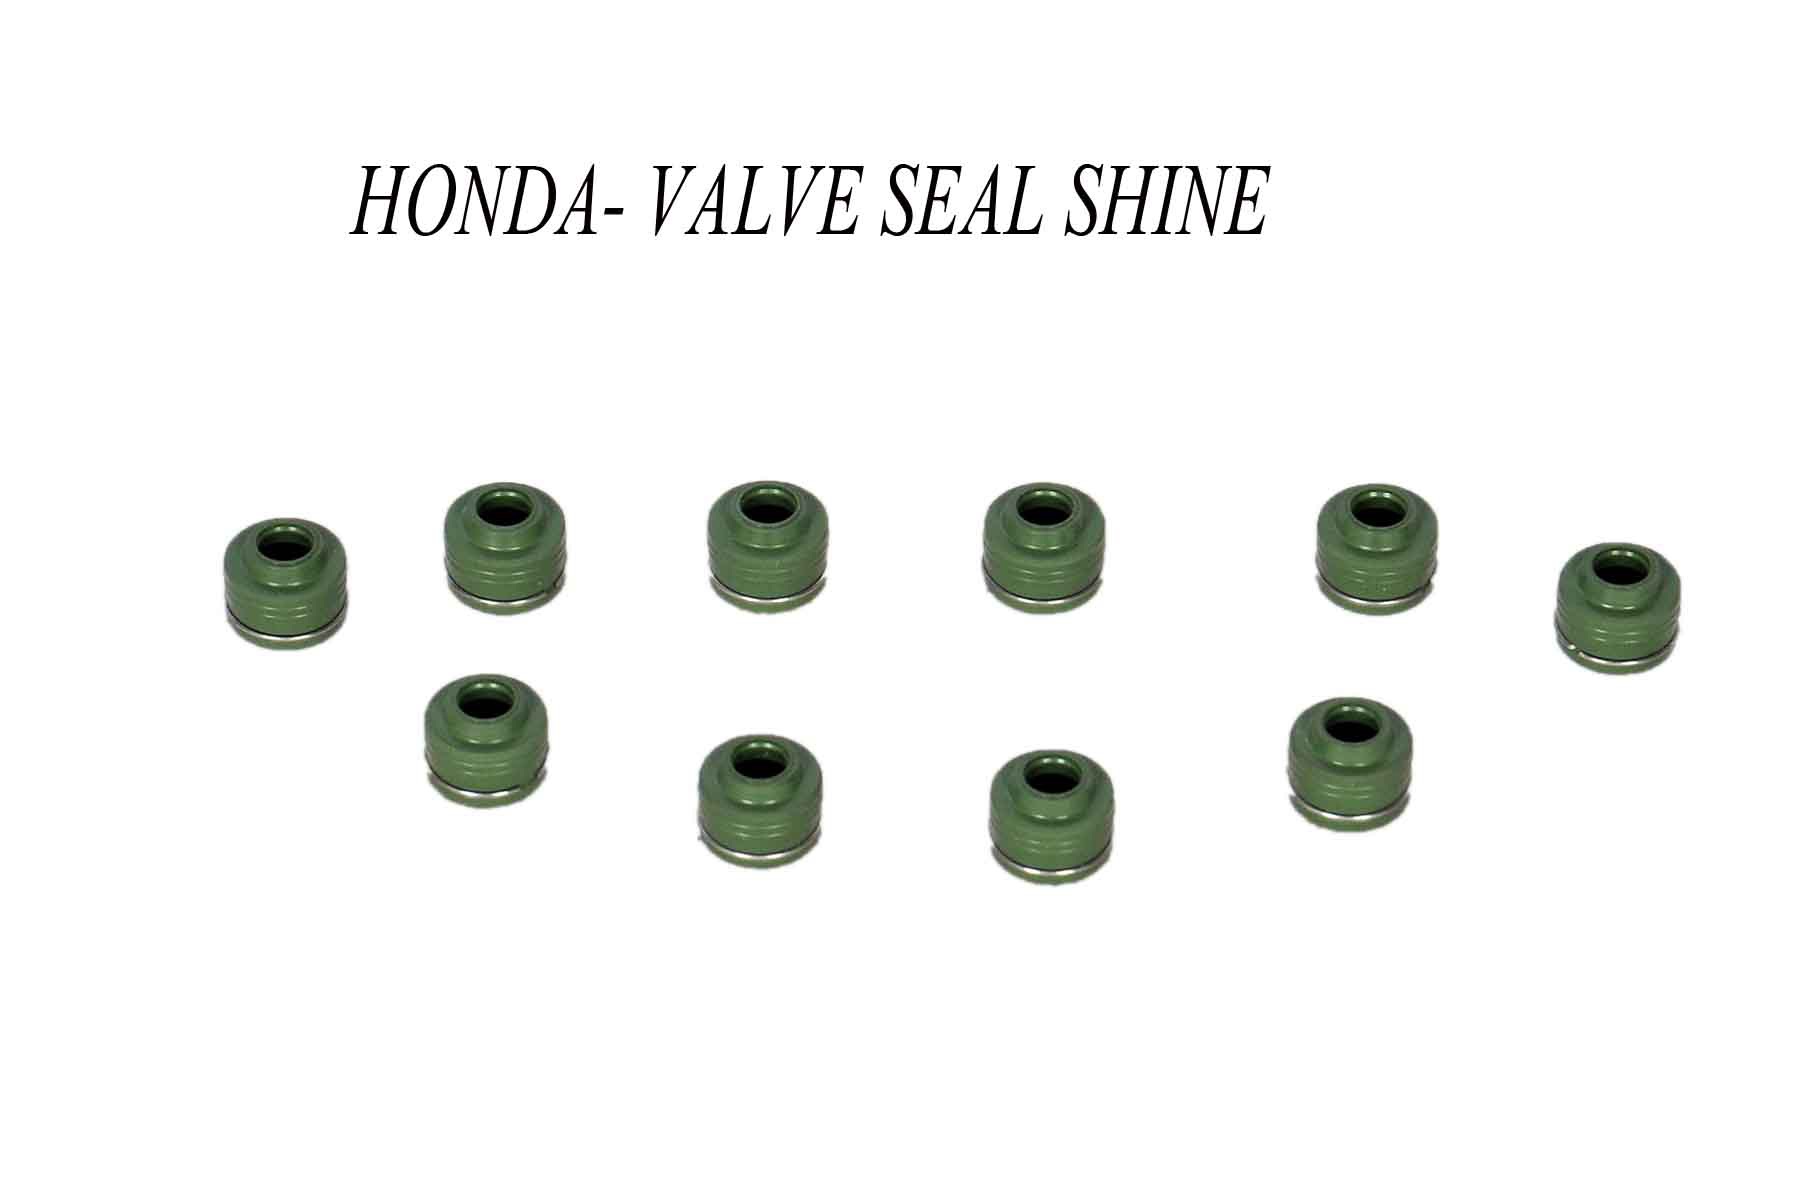 HONDA VALVE SEAL SHINE